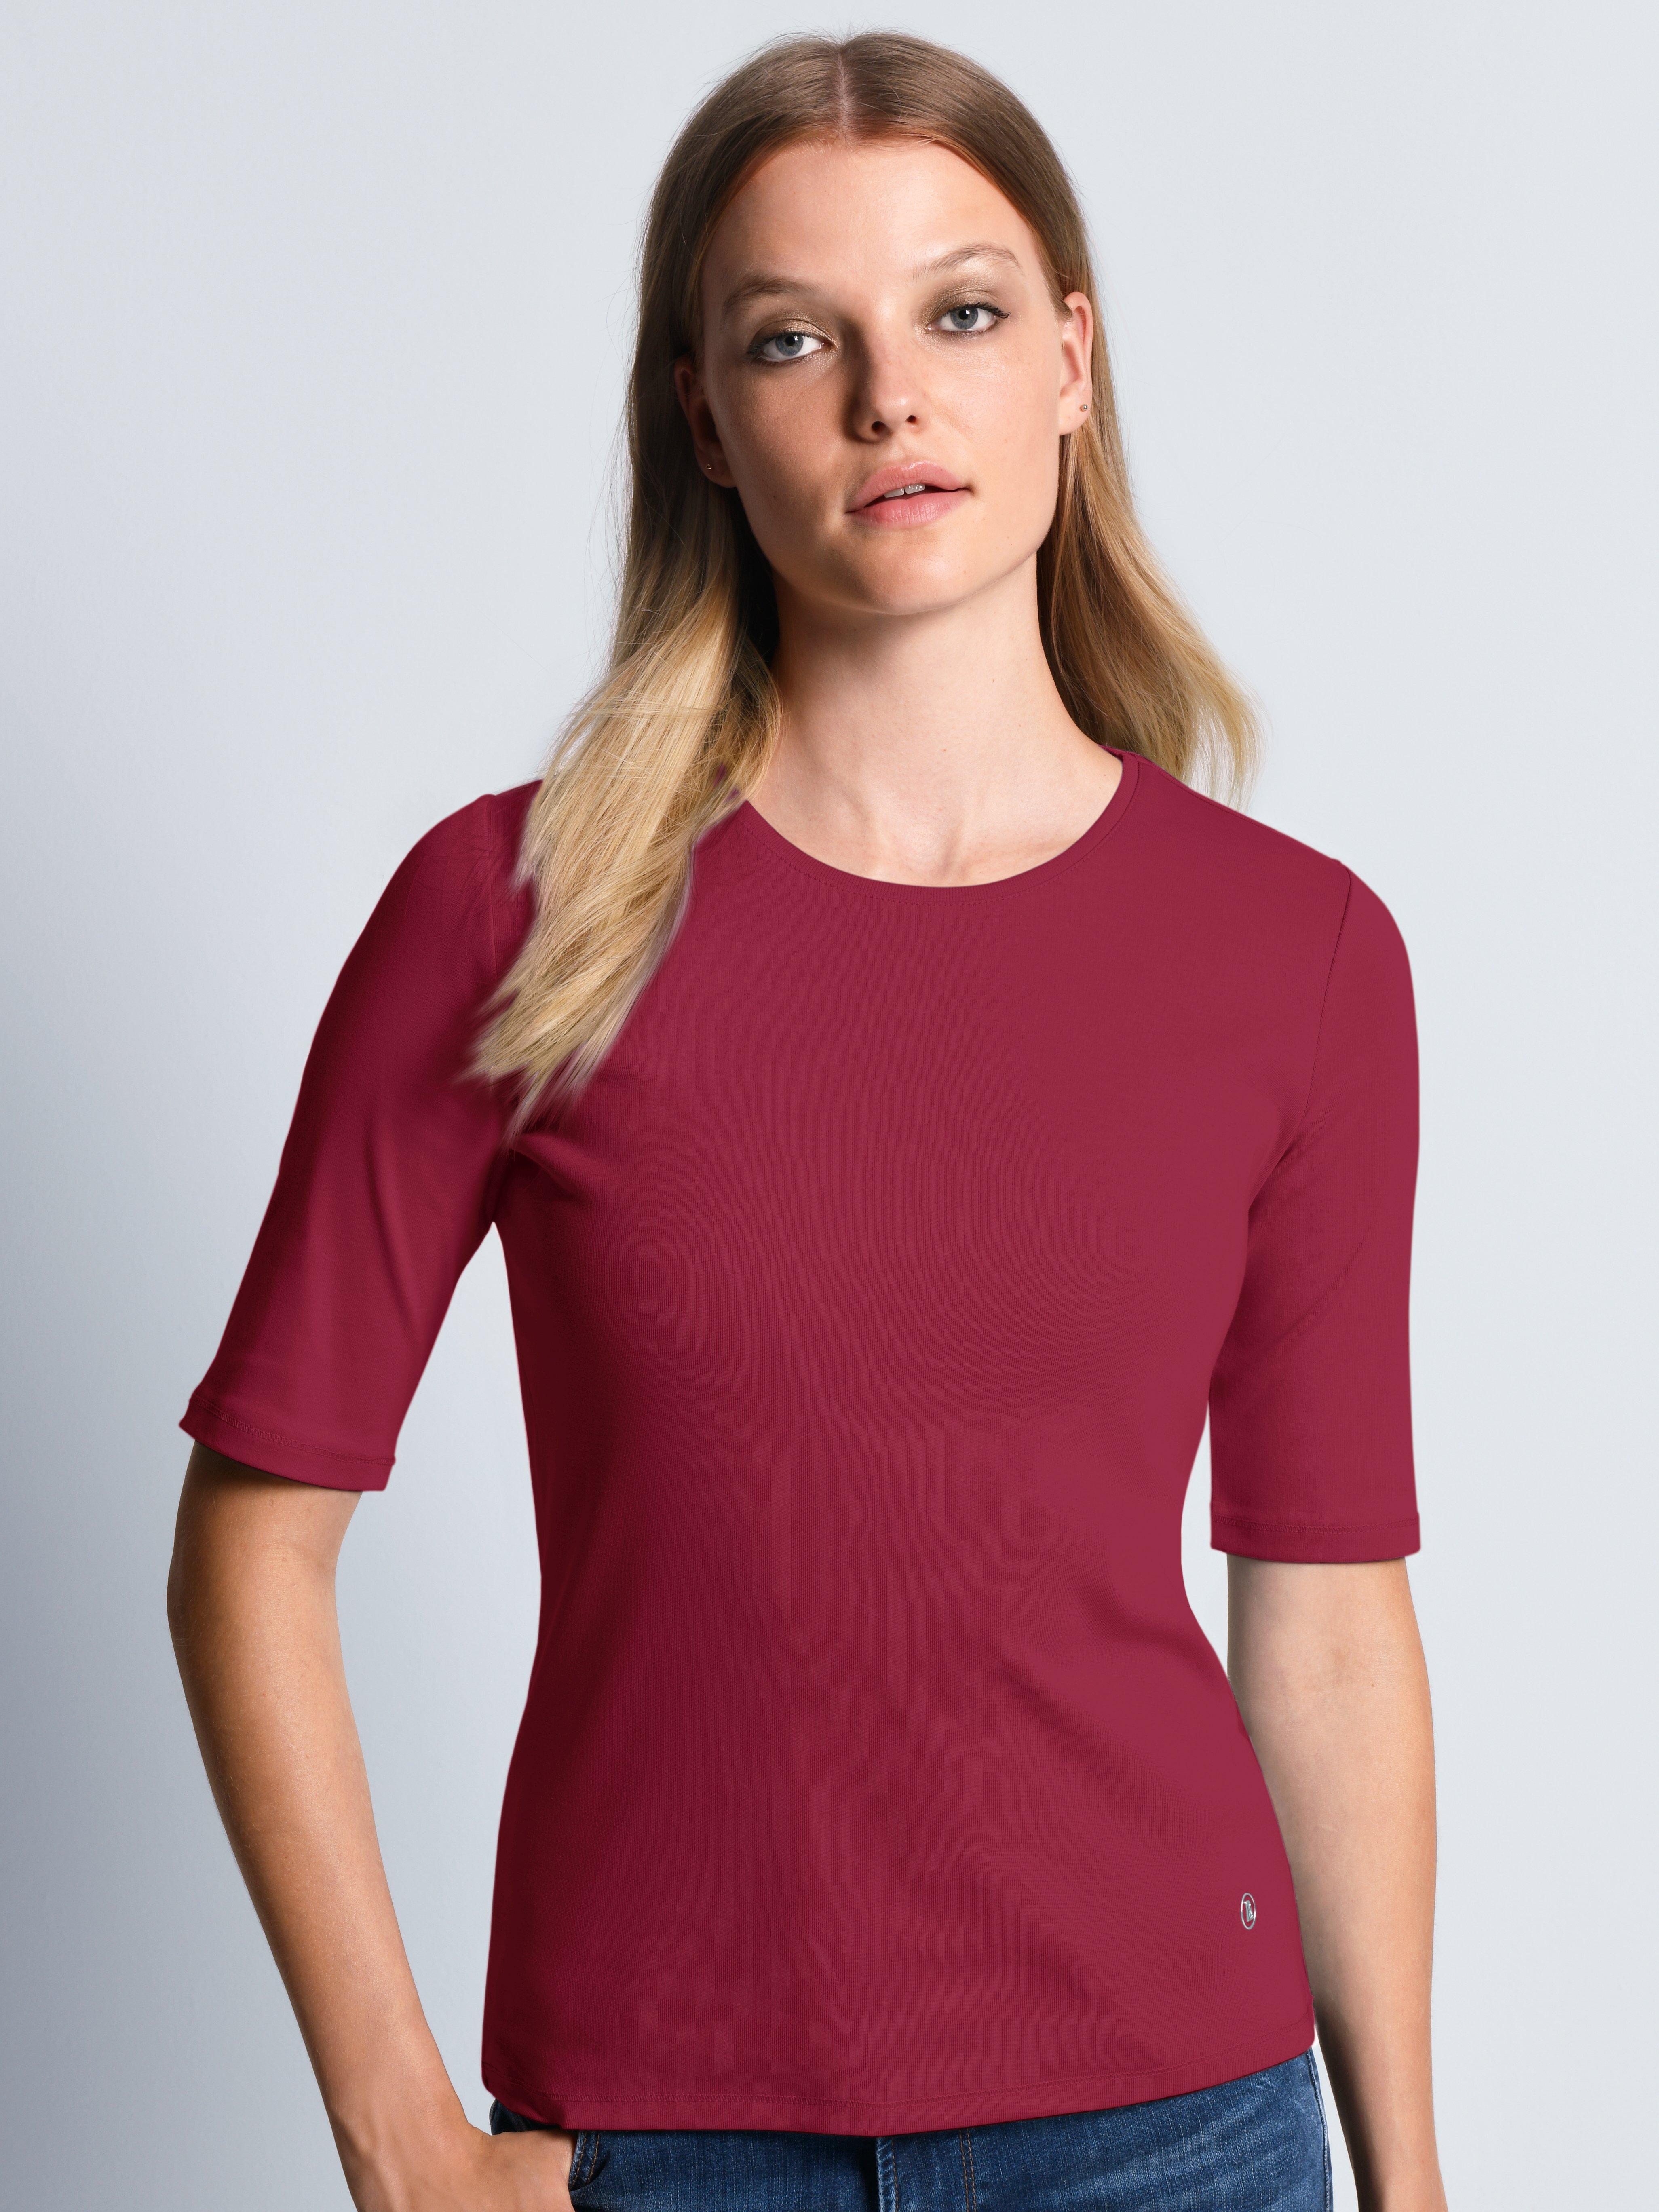 Bogner - Rundhals-Shirt Modell Velvet